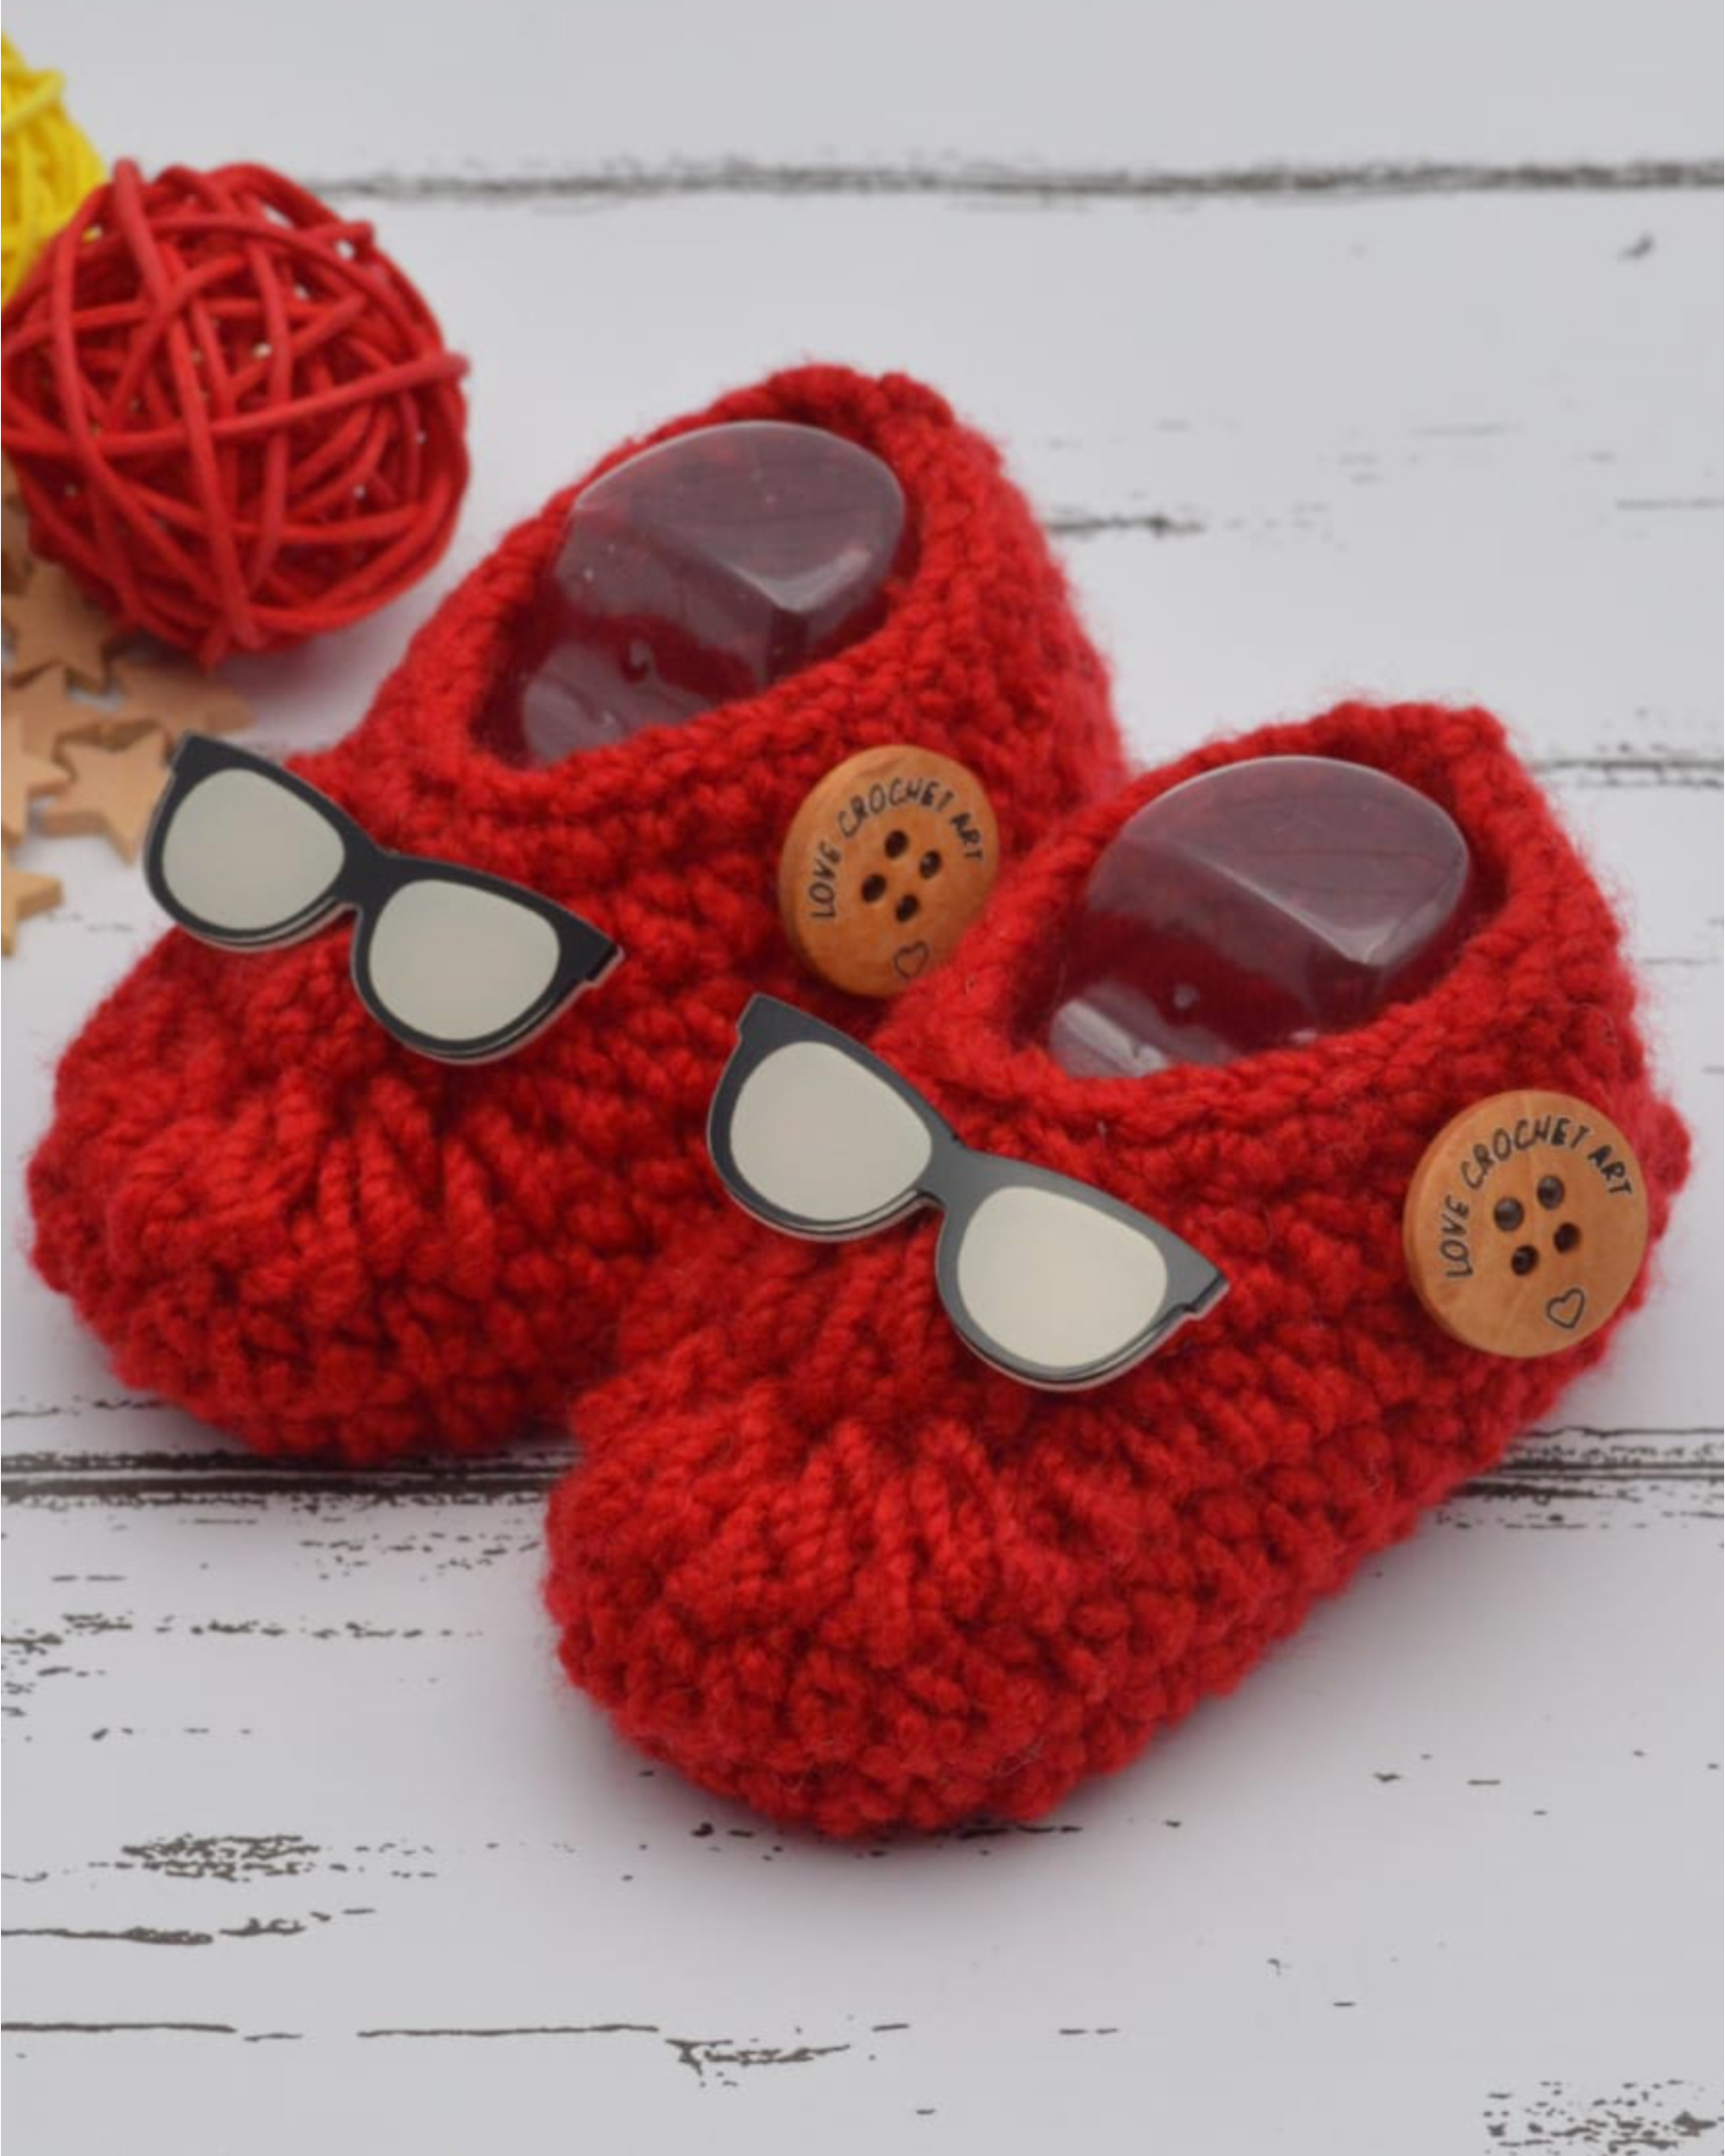 Red hand crocheted woollen booties